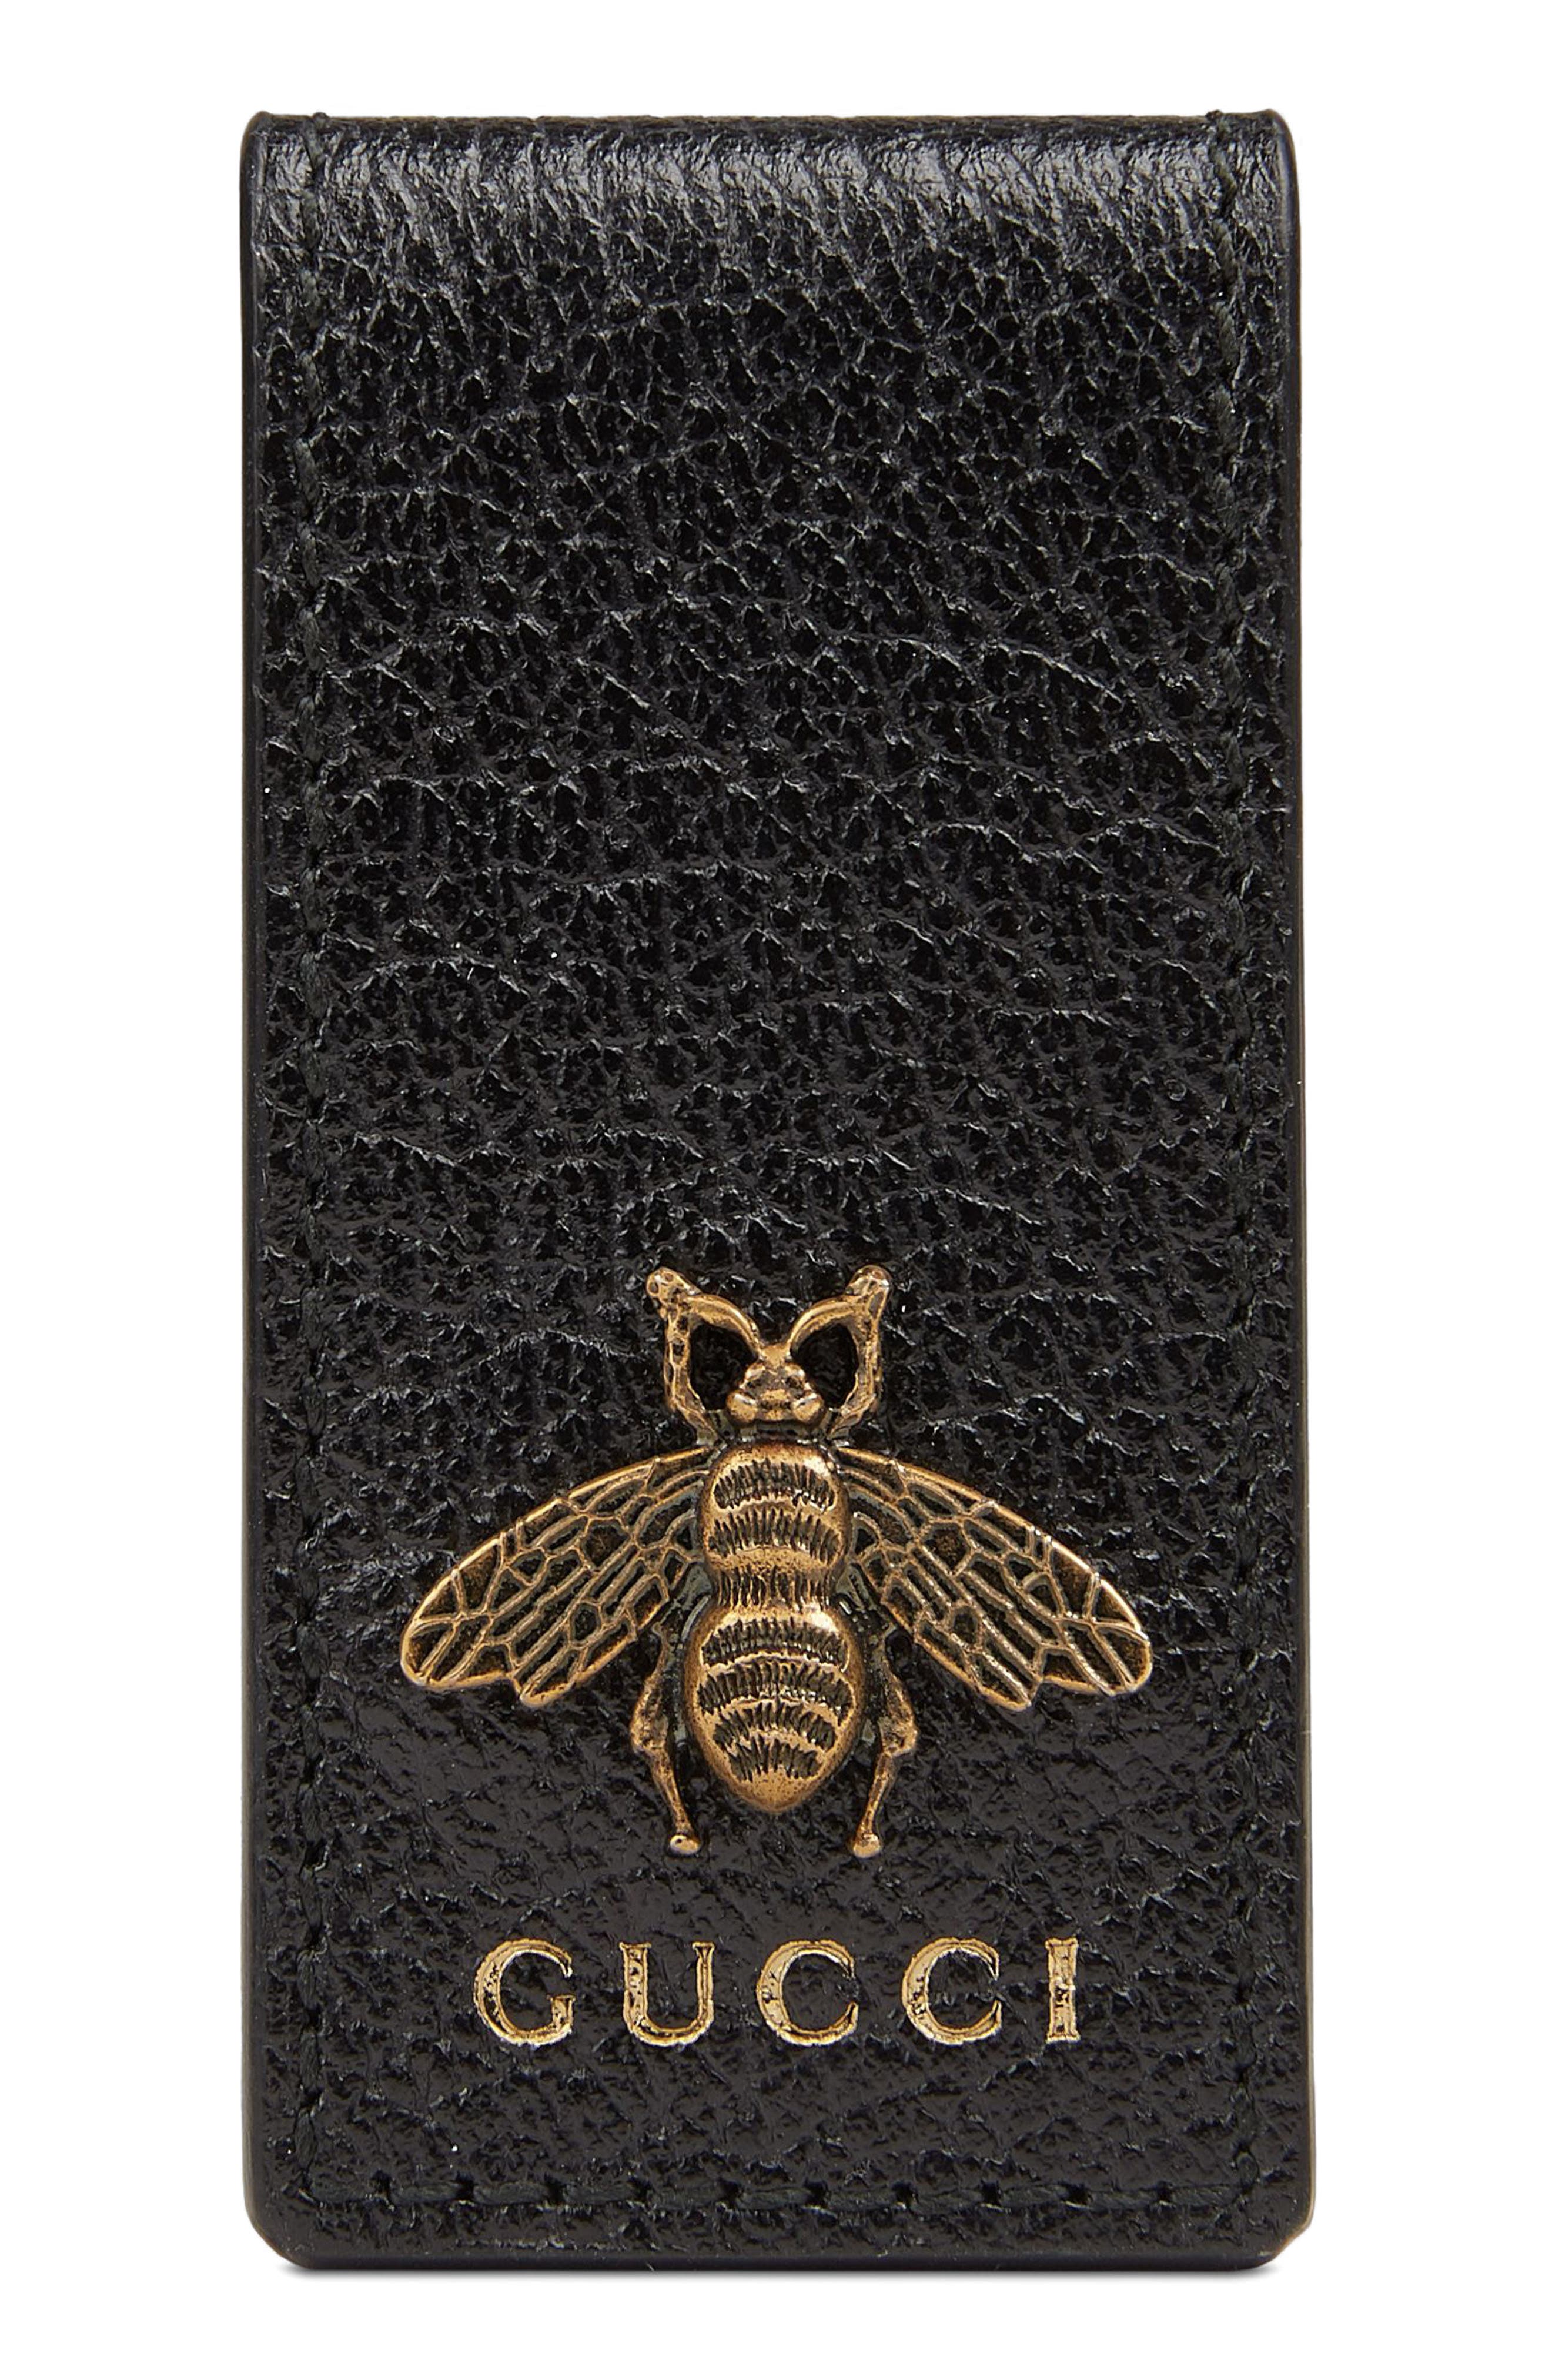 gucci money clip leather